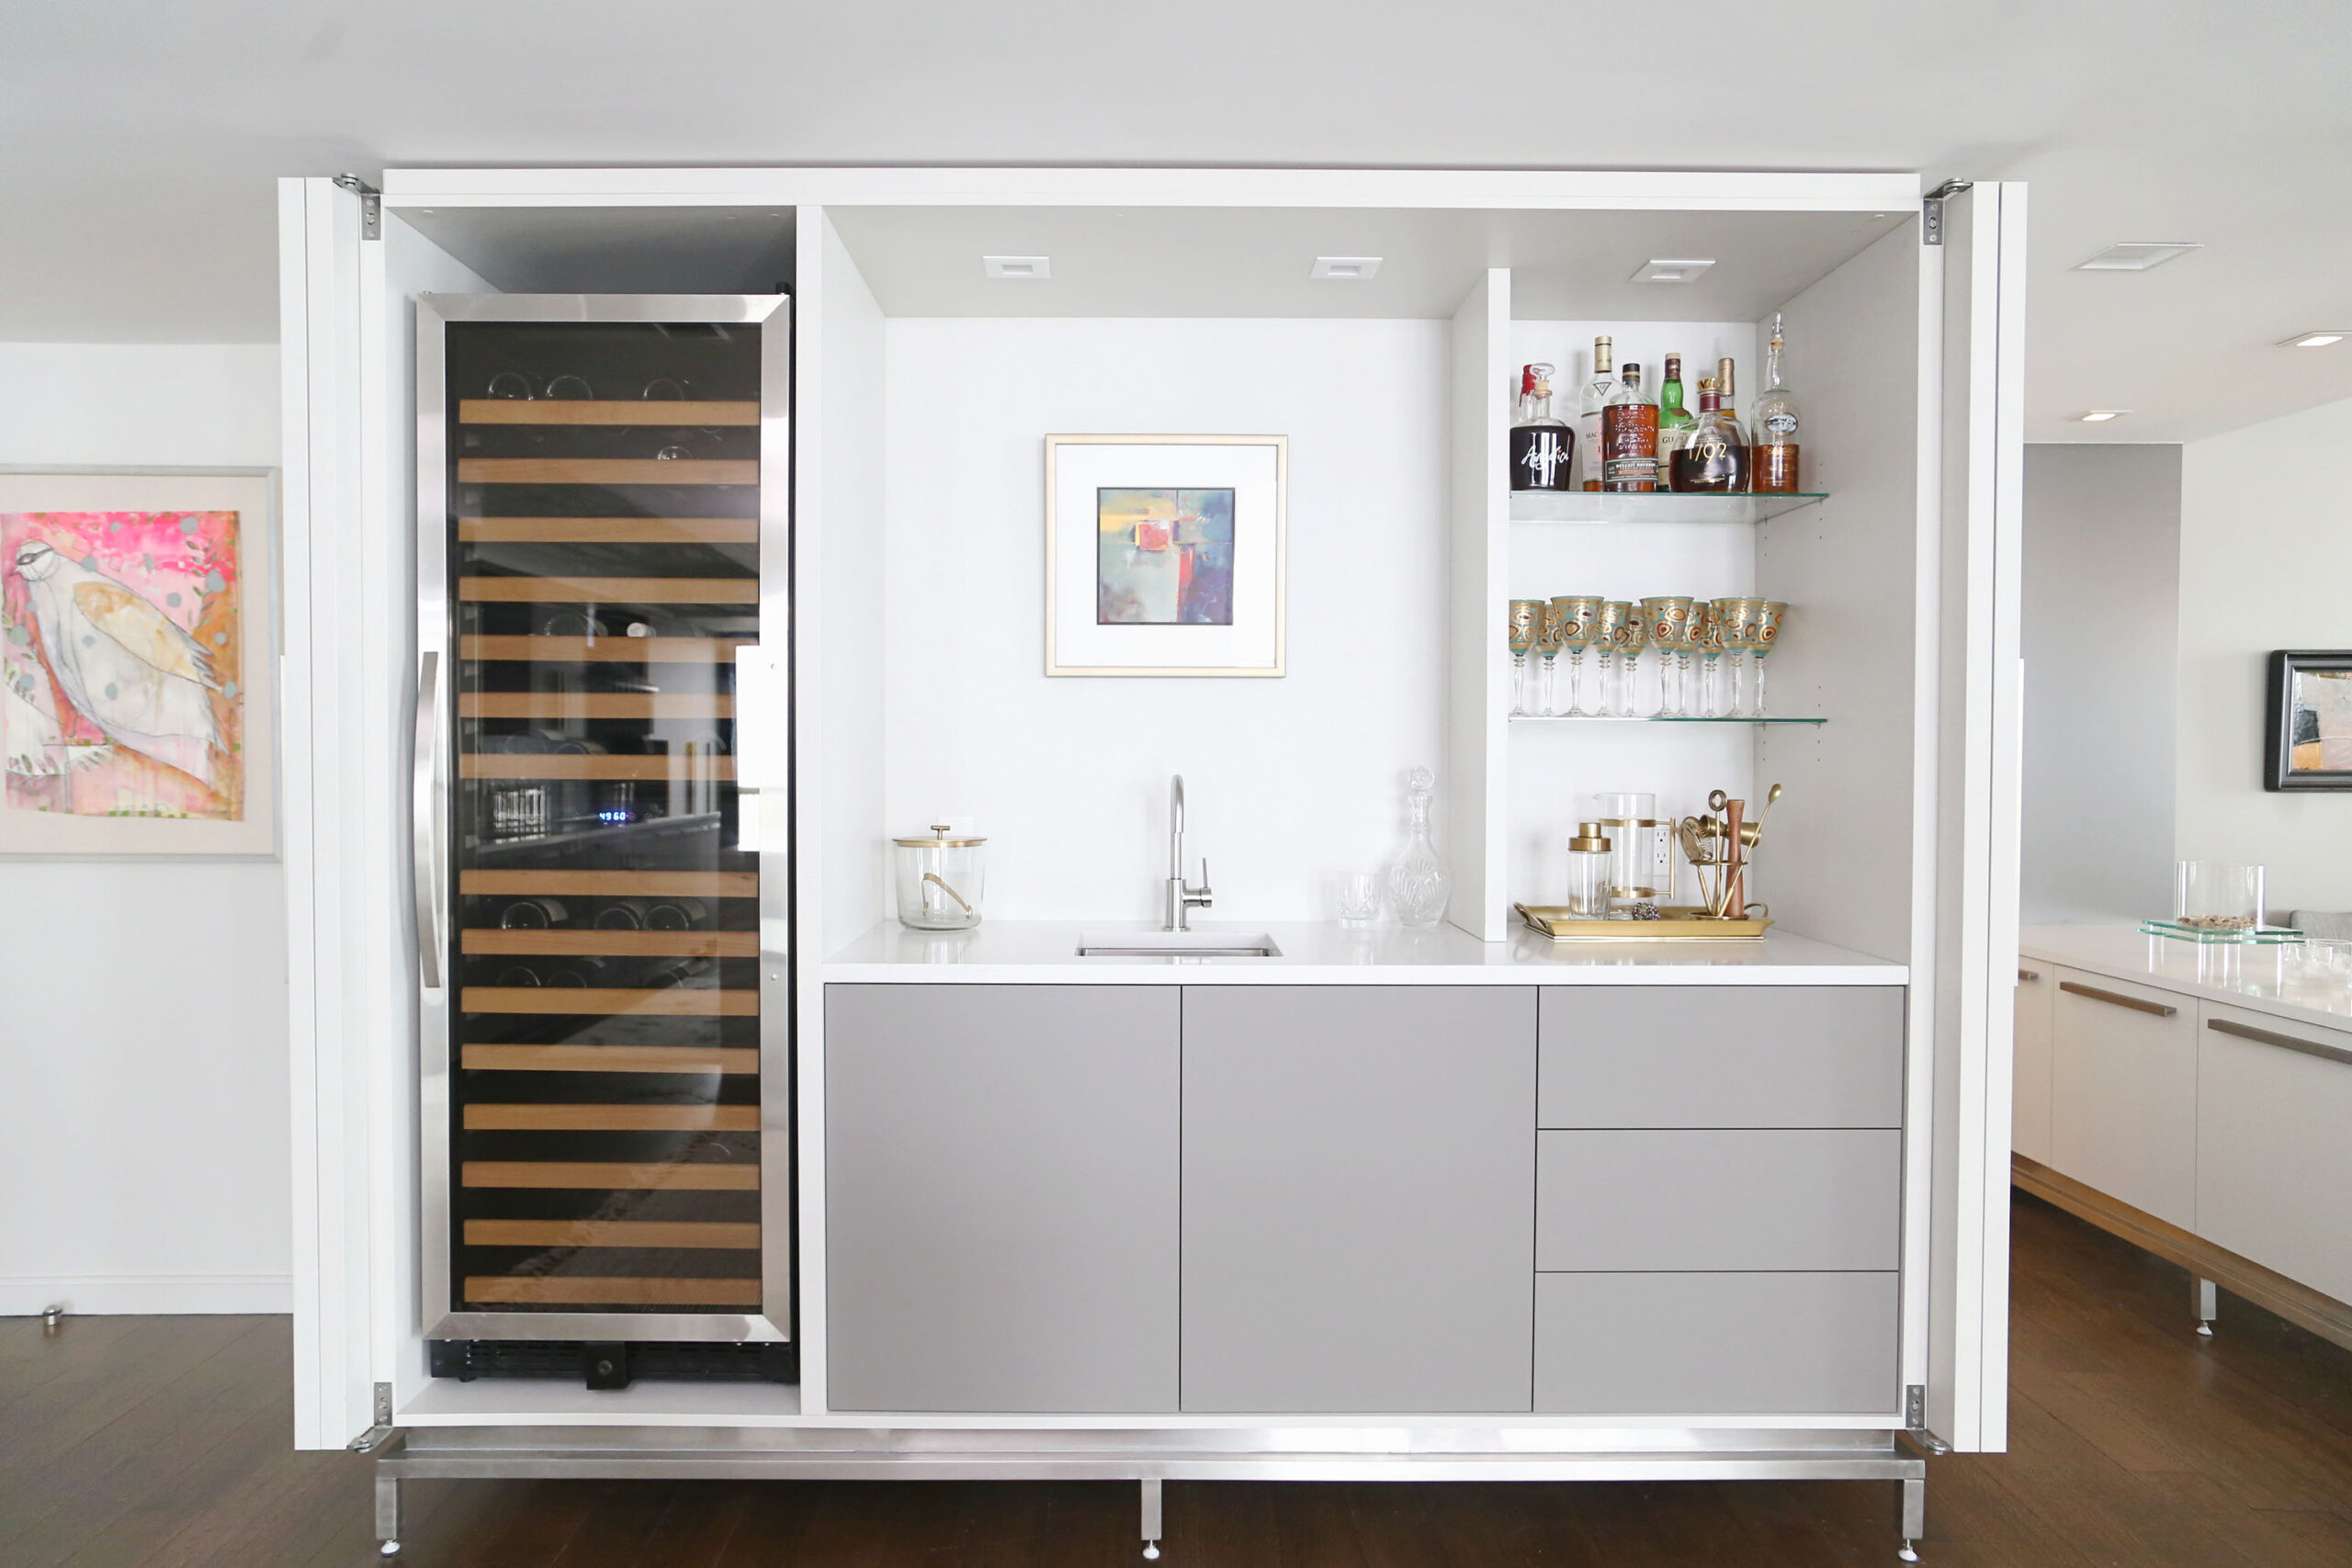 Open Kitchen Bar Space Tall Wine Refrigerator Bar Sink Cabinet Storage Open Shelves Elite Kitchens Tulsa Kitchen Design Remodel